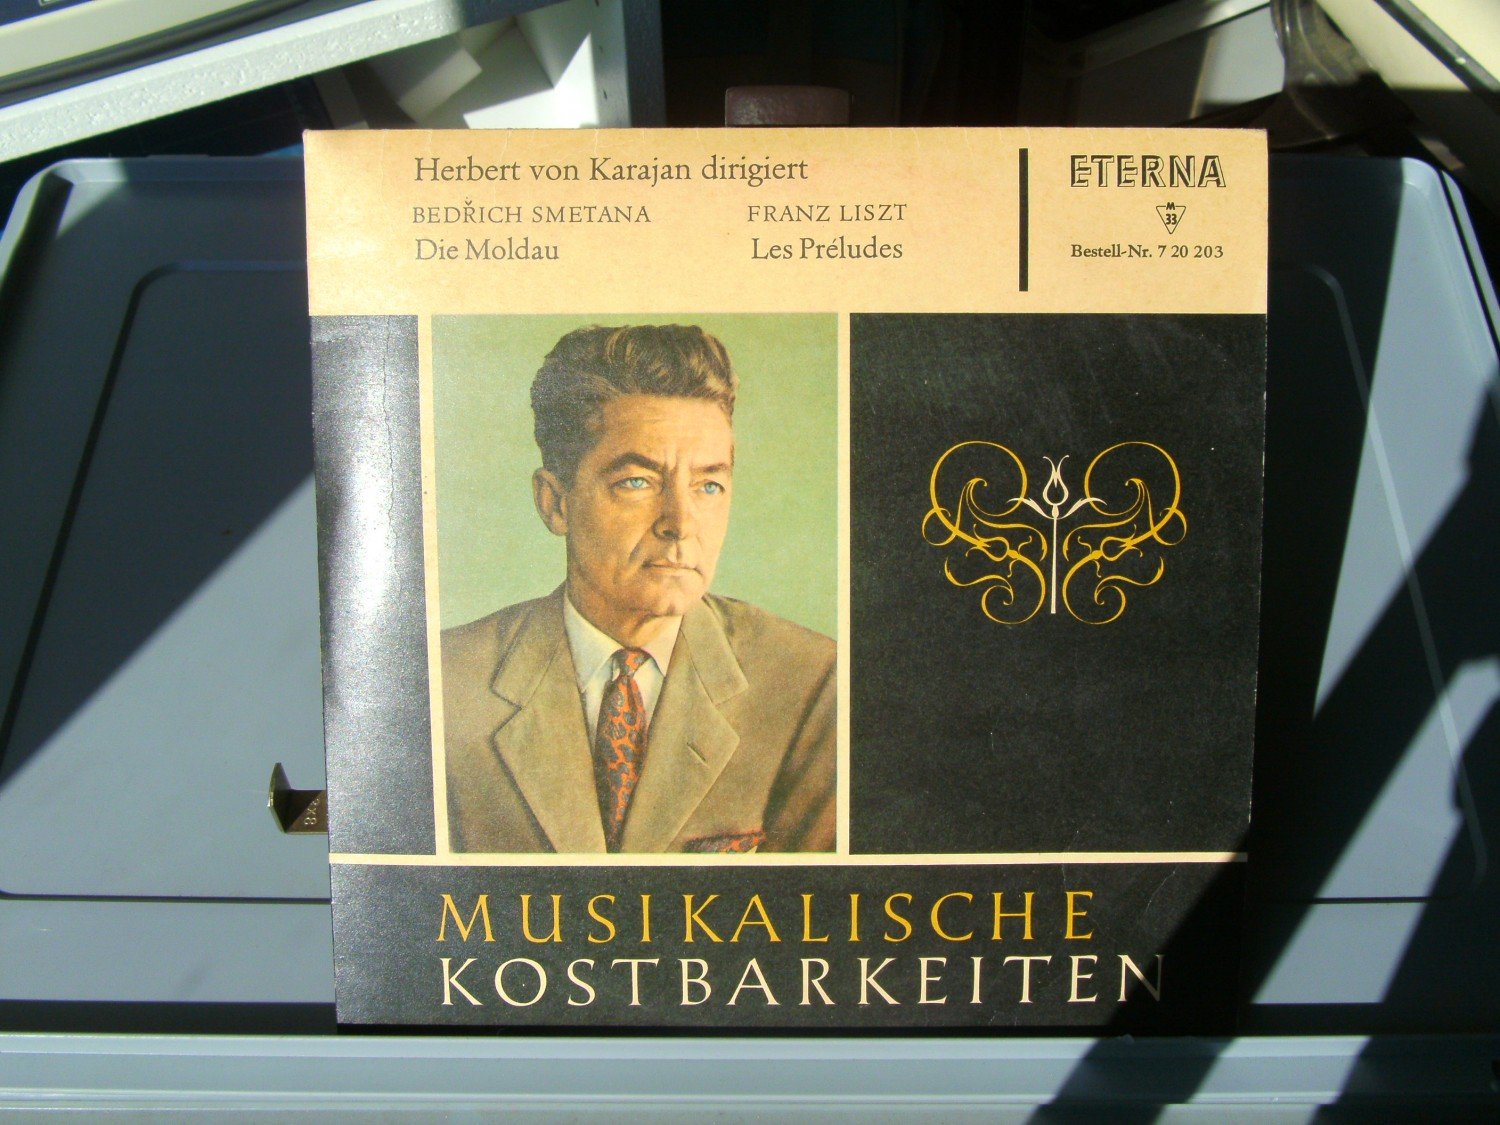 gebraucht – A02fmSCJ21ZZ7 Karajan) (Herbert MUSIKALISCHE KOSTBARKEITEN“ von – Tonträger kaufen